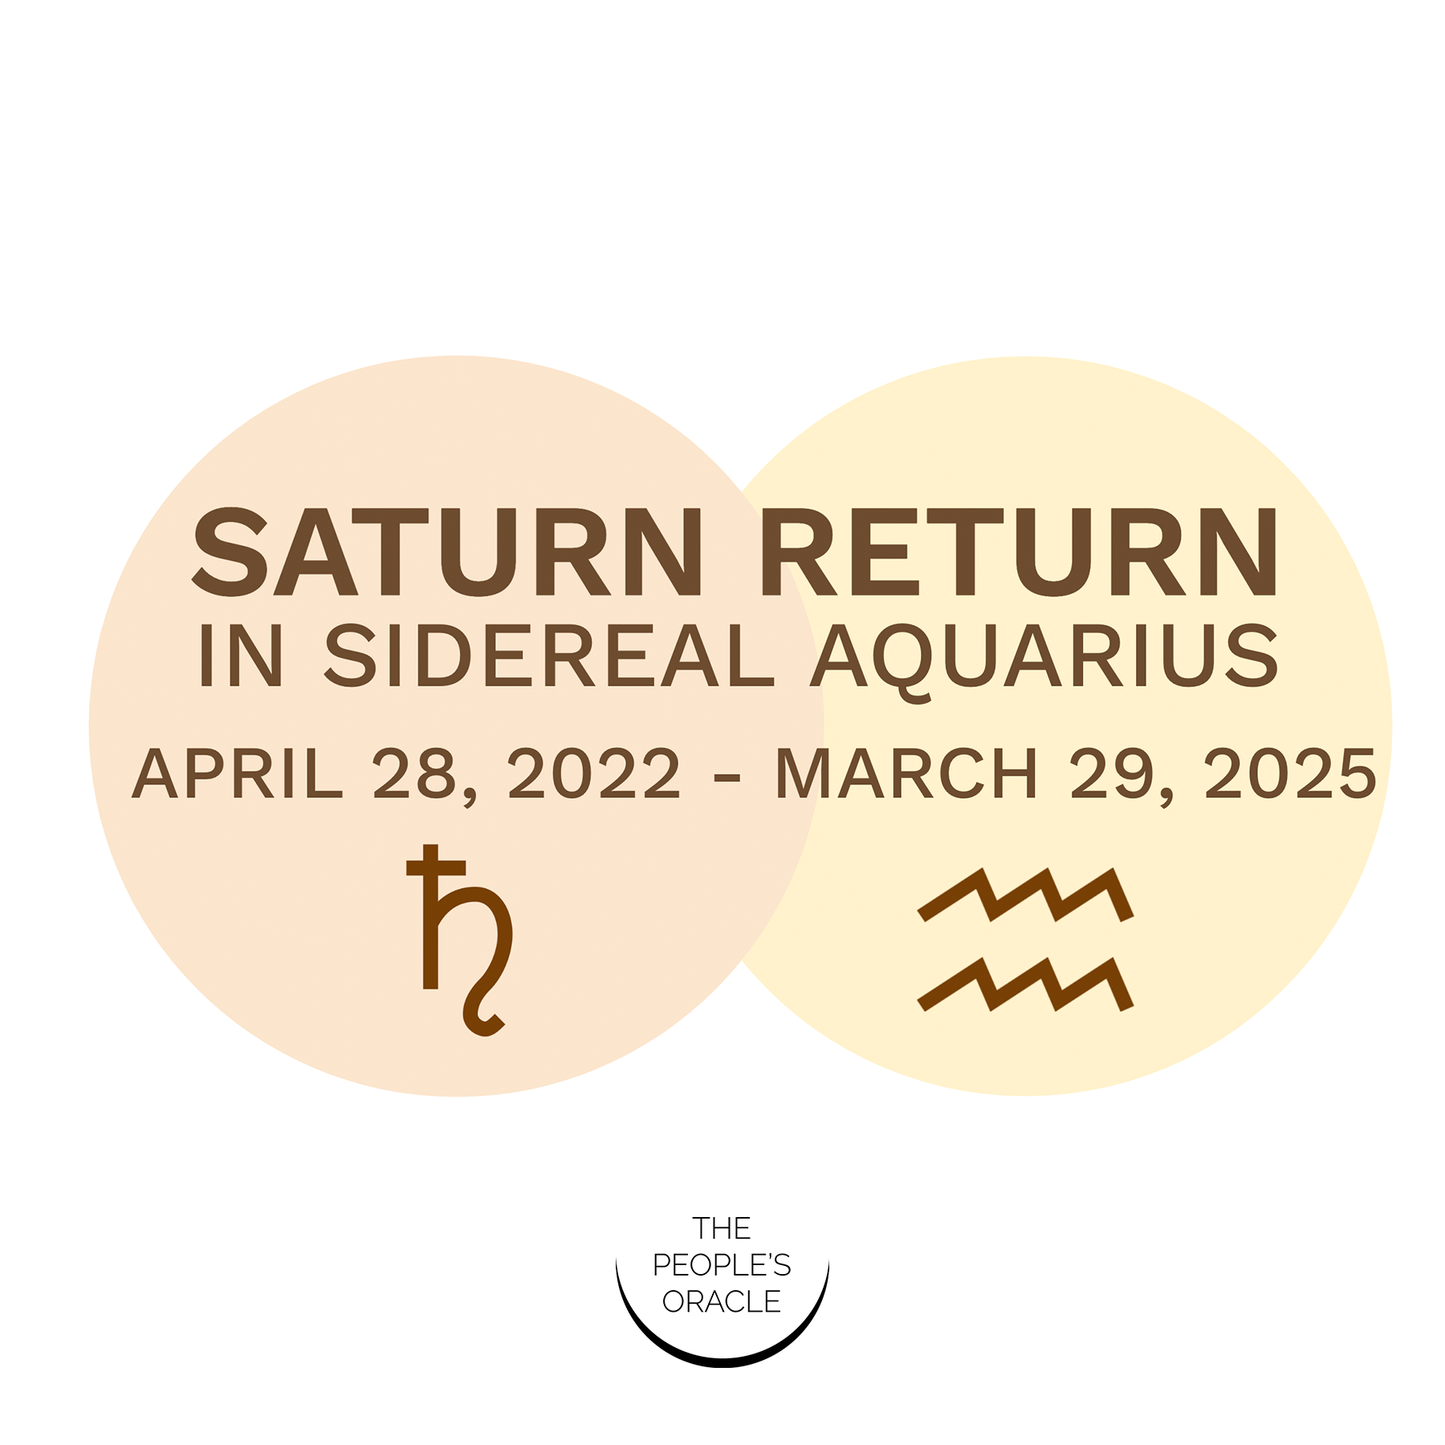 Saturn Return in Sidereal Aquarius Workshop